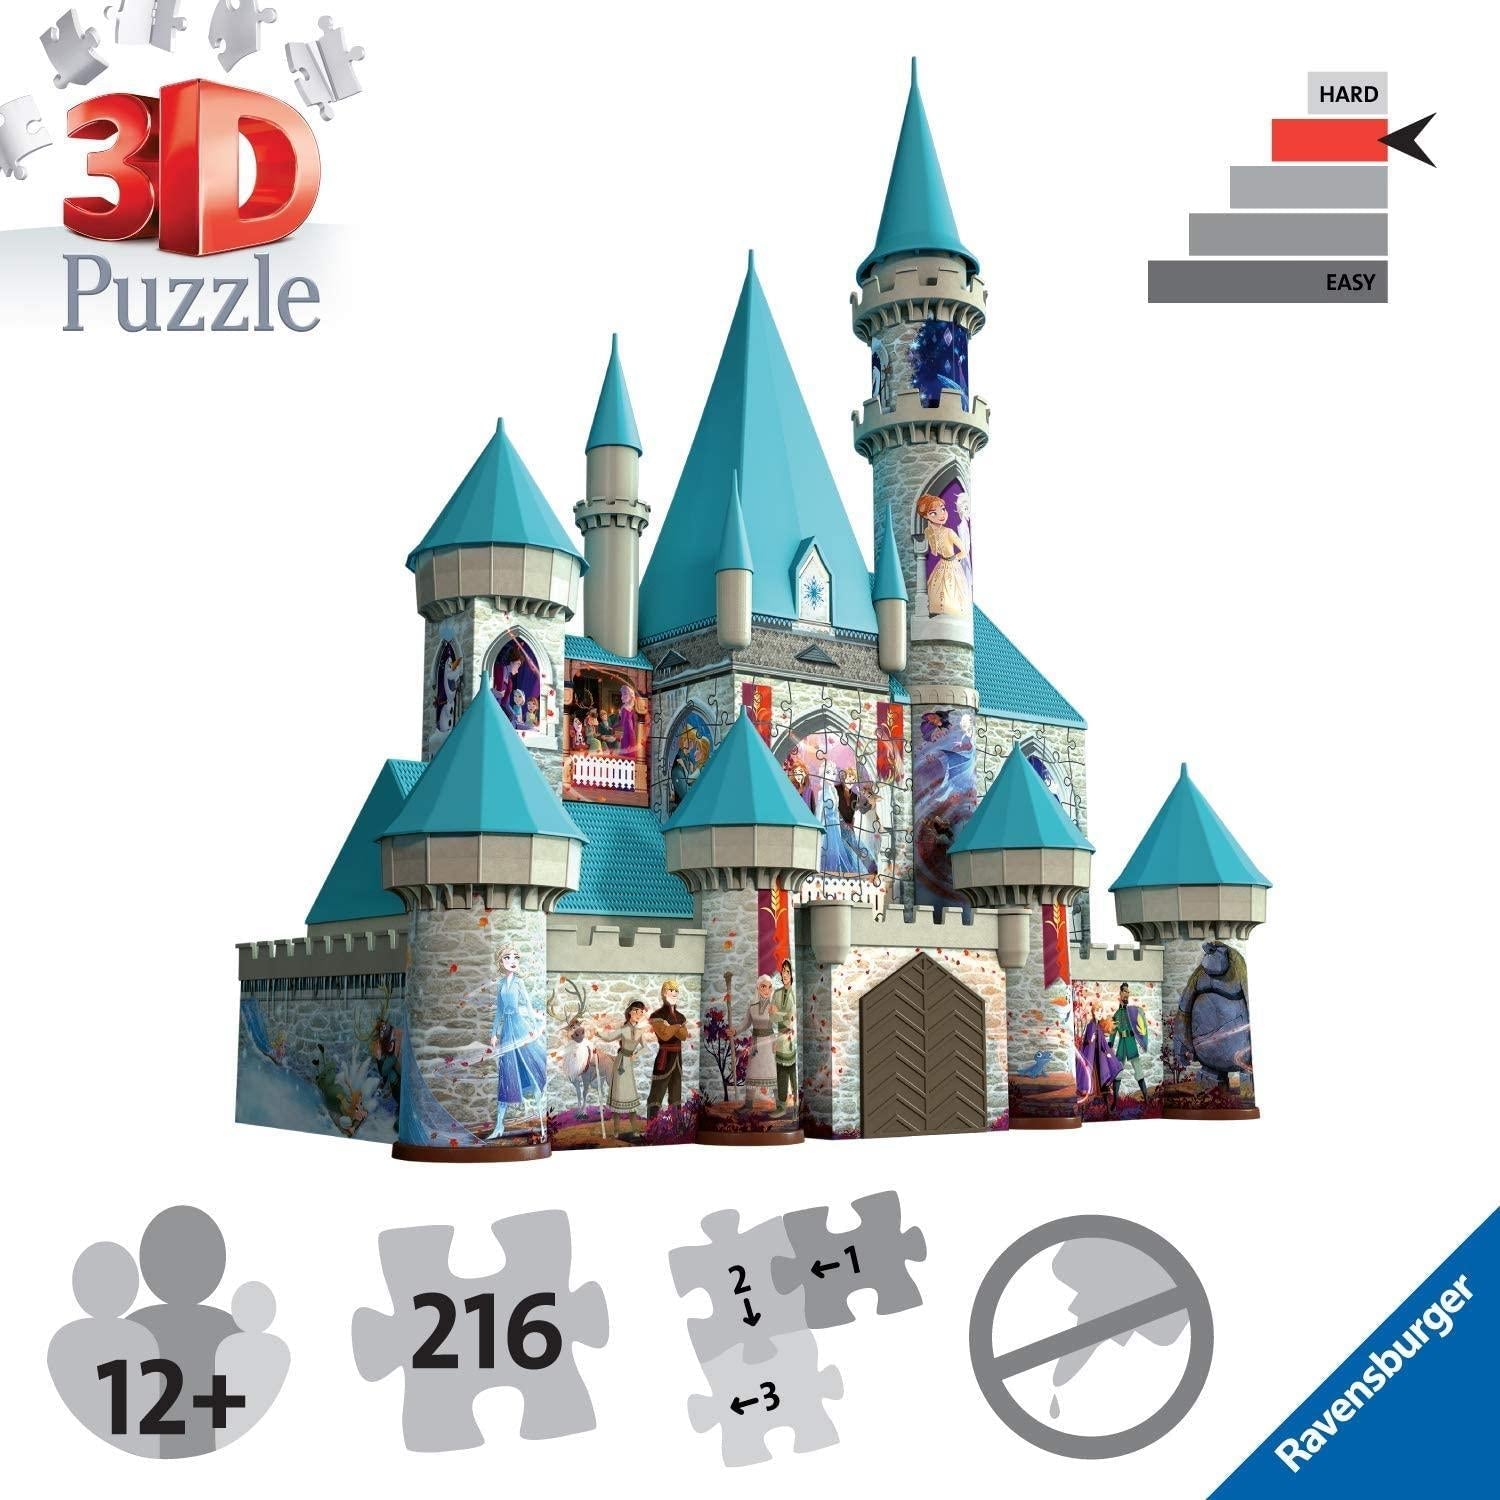 Château Disney - Puzzle 3D - Ravensburger